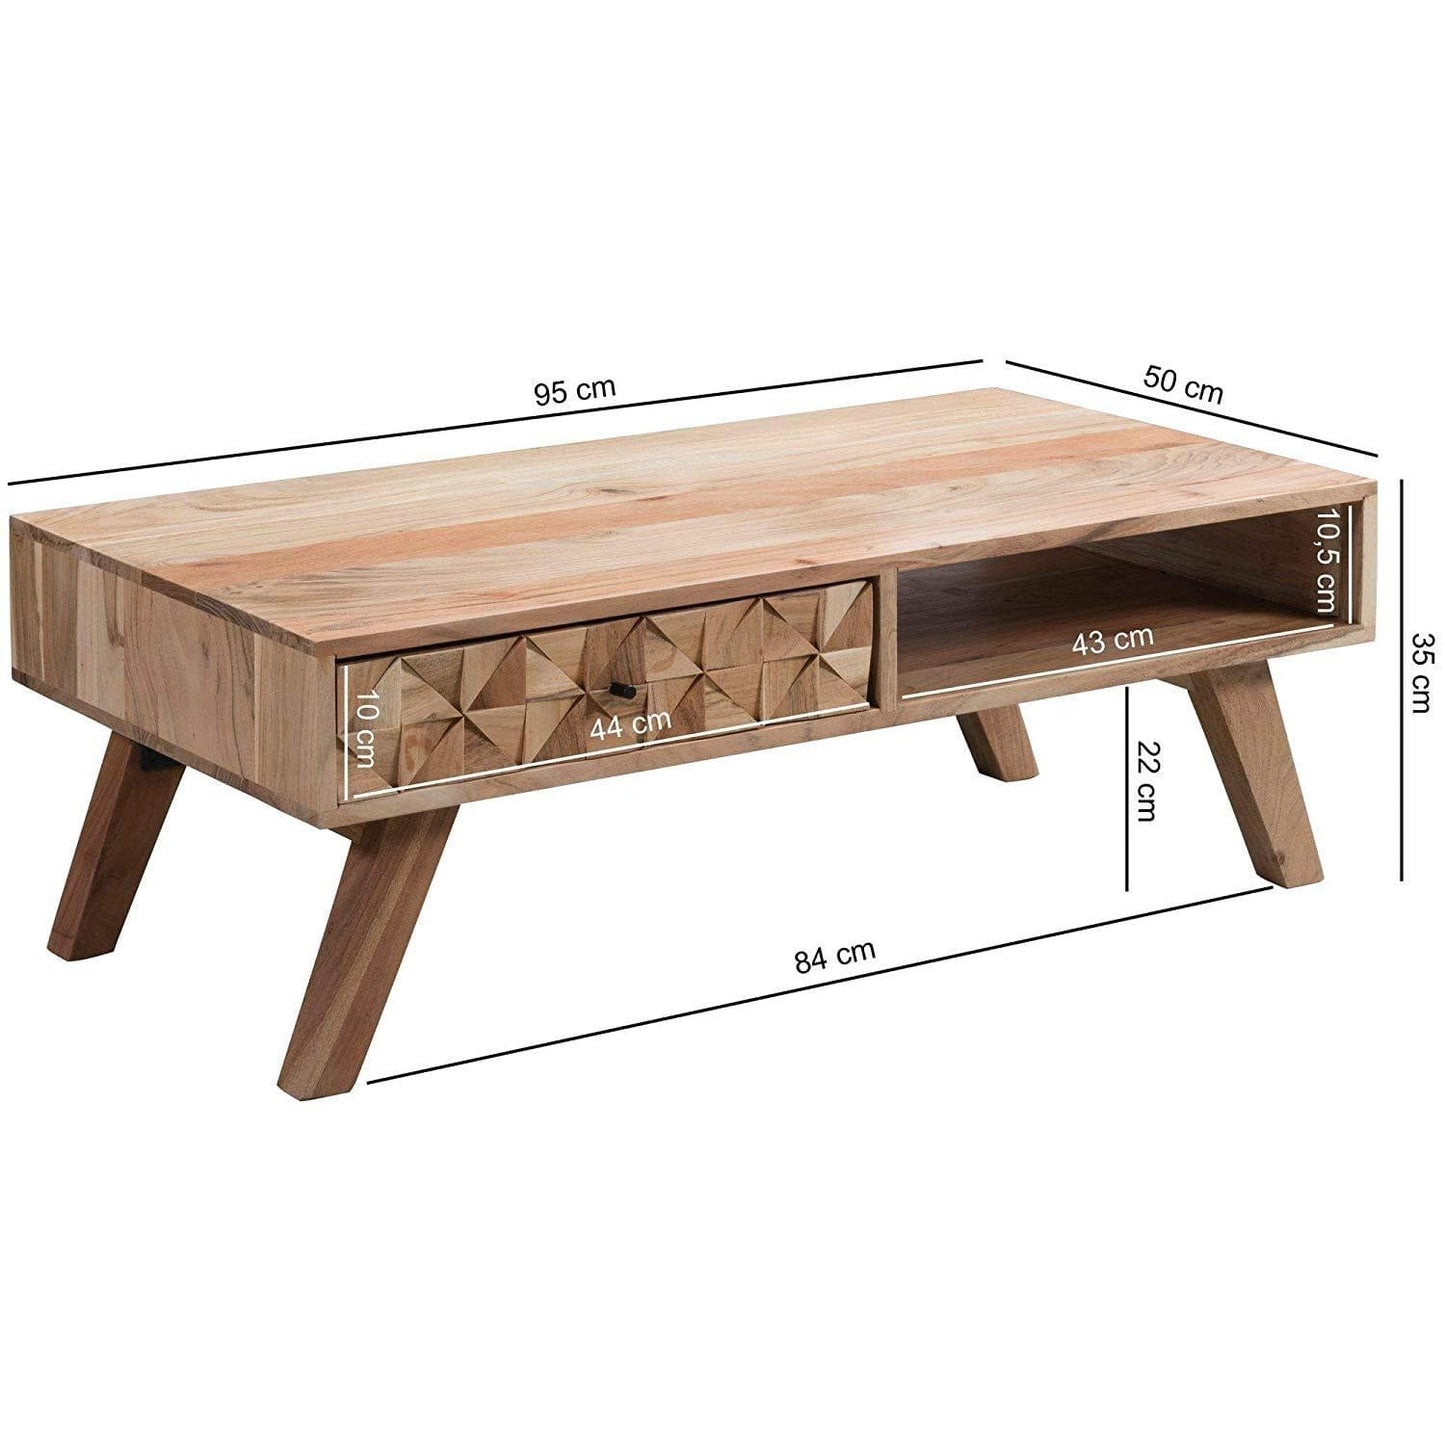 Nancy's Coffee Table Wood - Table basse faite à la main - Table basse - Bois d'acacia - 95 x 35 x 50 cm